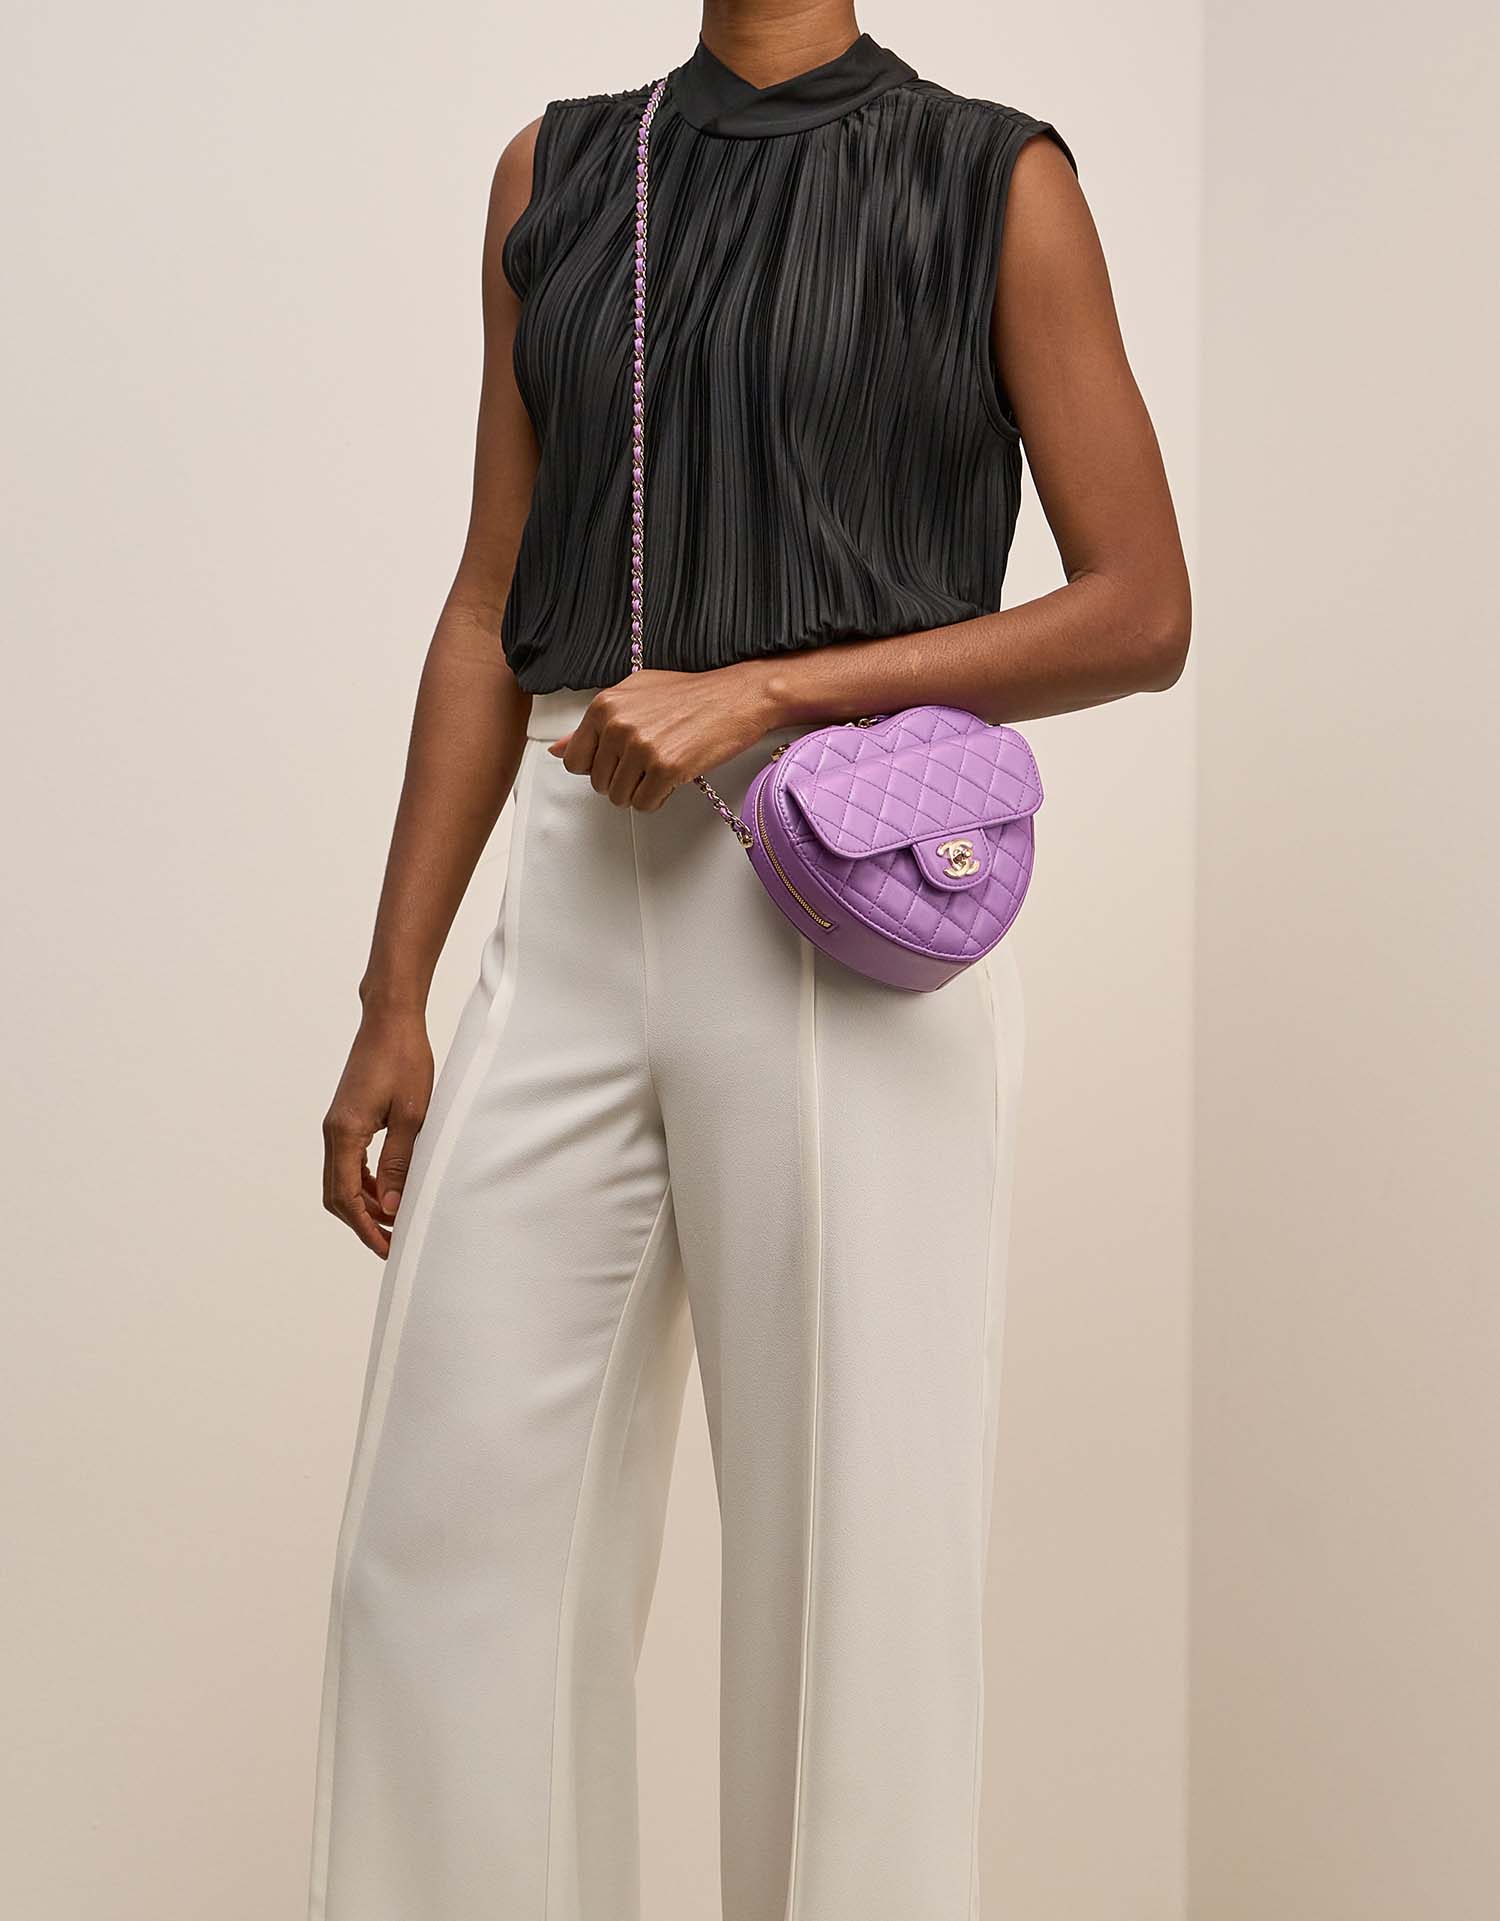 Chanel TimelessHeart Medium Violet auf Model | Verkaufen Sie Ihre Designer-Tasche auf Saclab.com